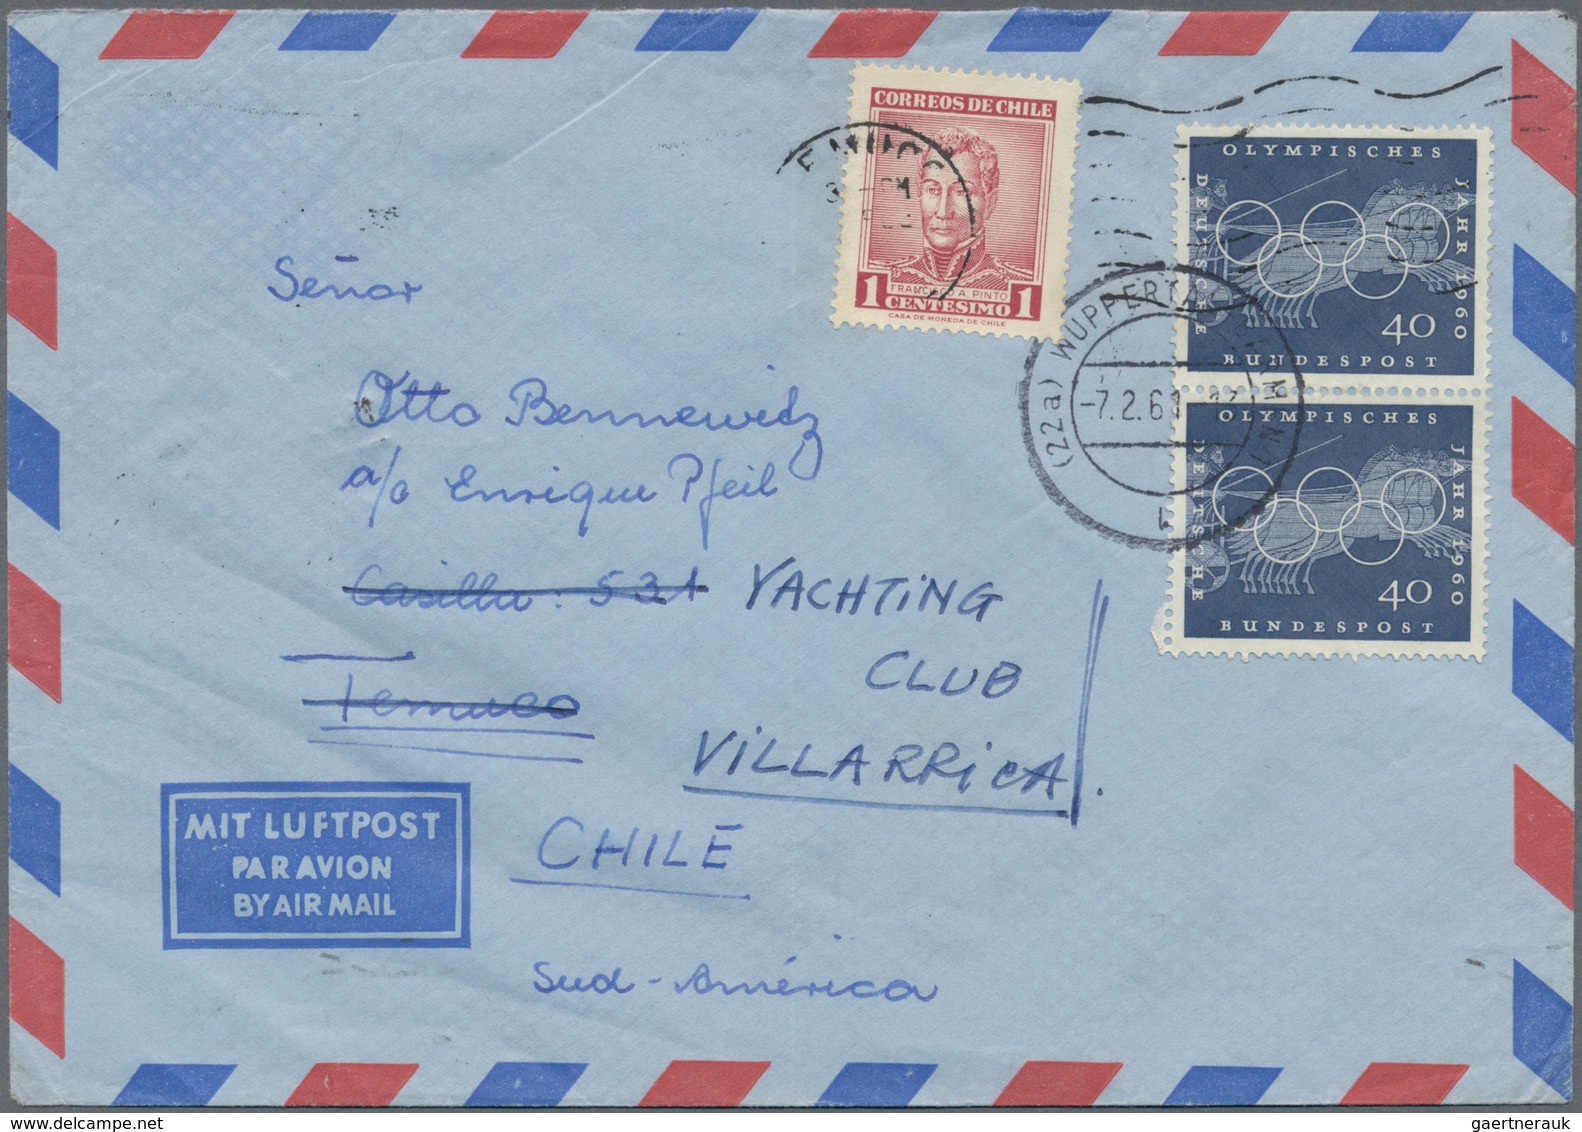 Bundesrepublik Deutschland: 1949/1990, vielseitige Partie von ca. 109 Briefen aus eine Korrespondenz